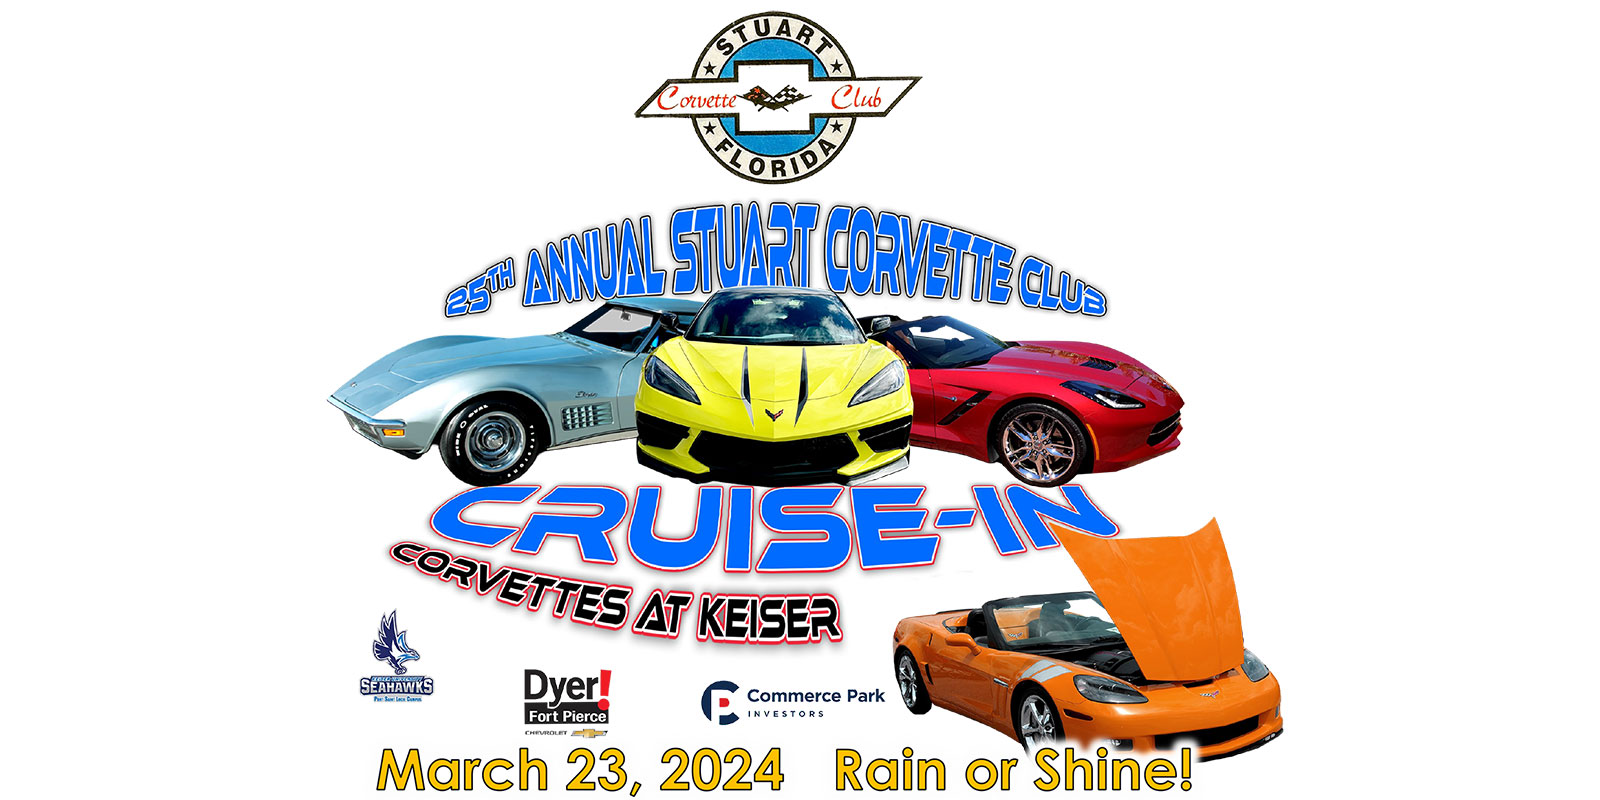 Corvette Club Cruise-In